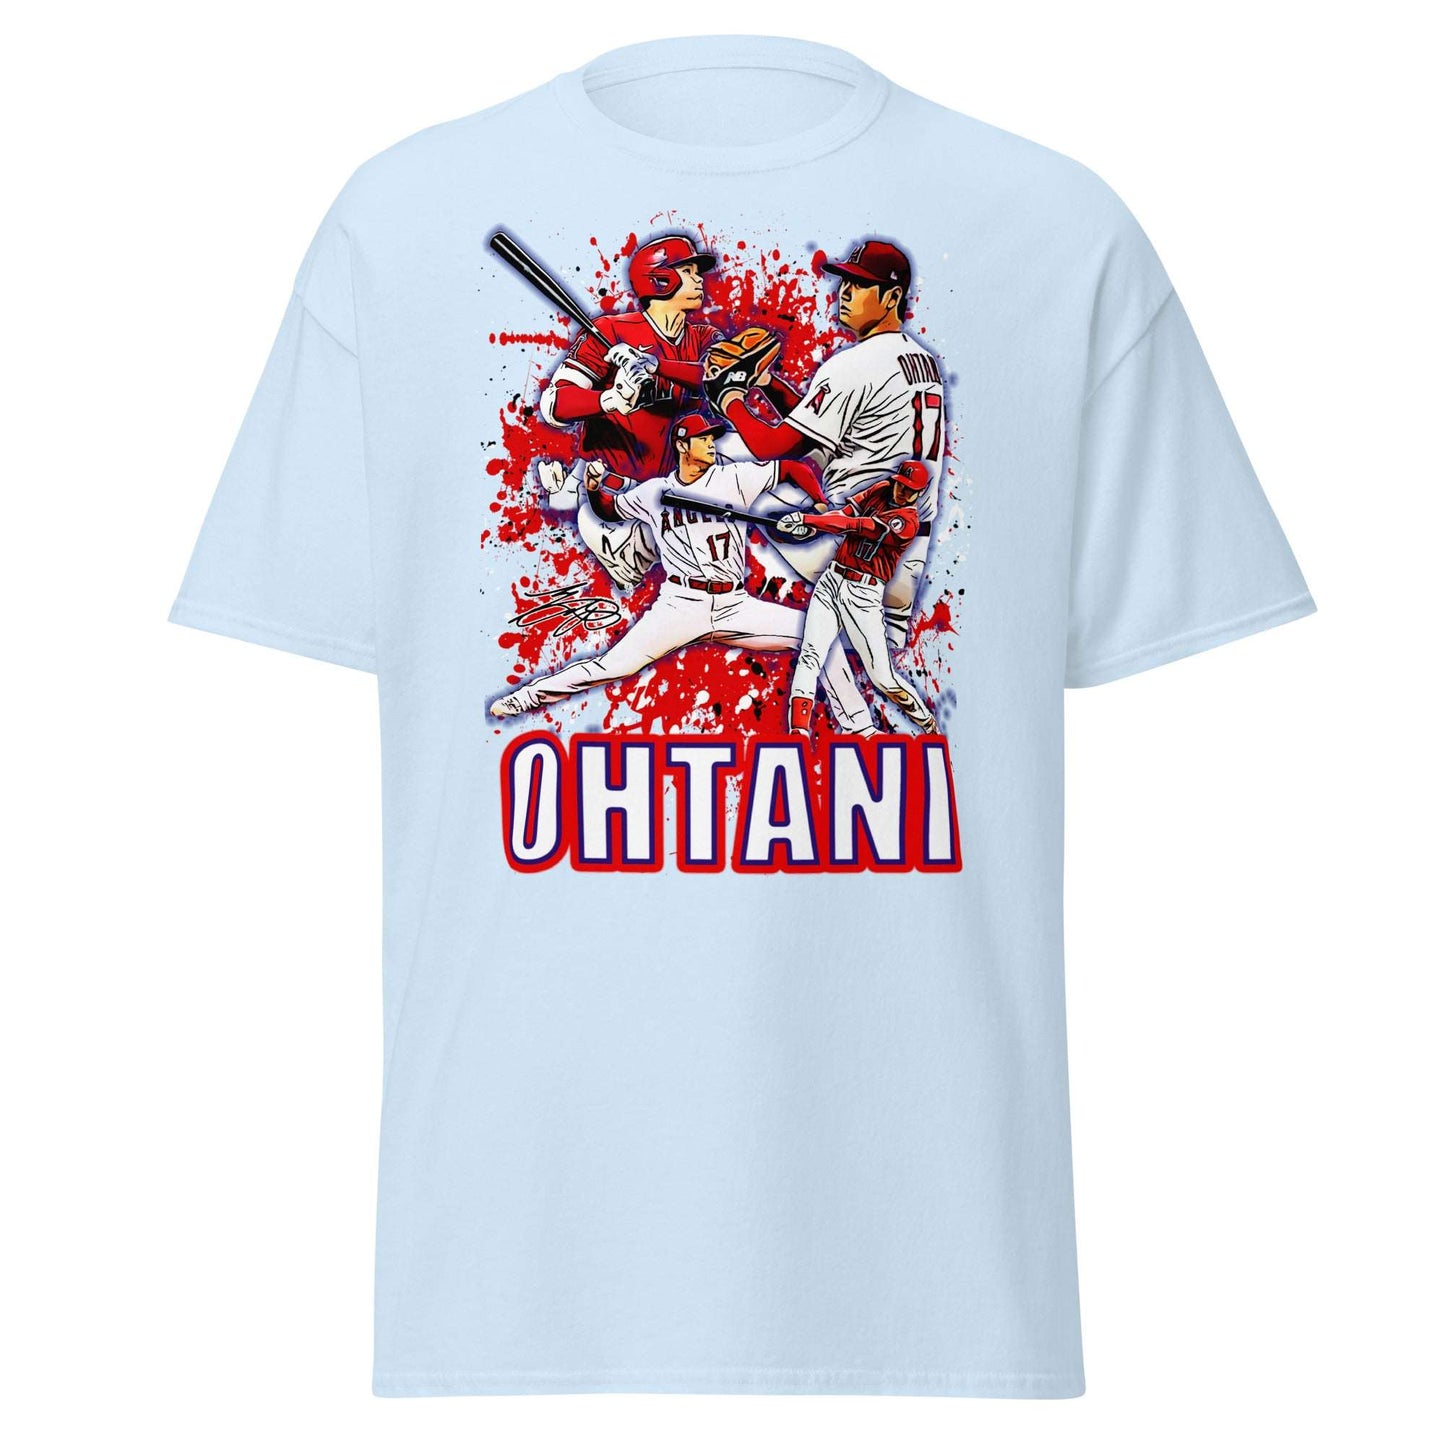 Los Angeles Angels Baseball Fan Tee - Ohtani - thenightmareinc